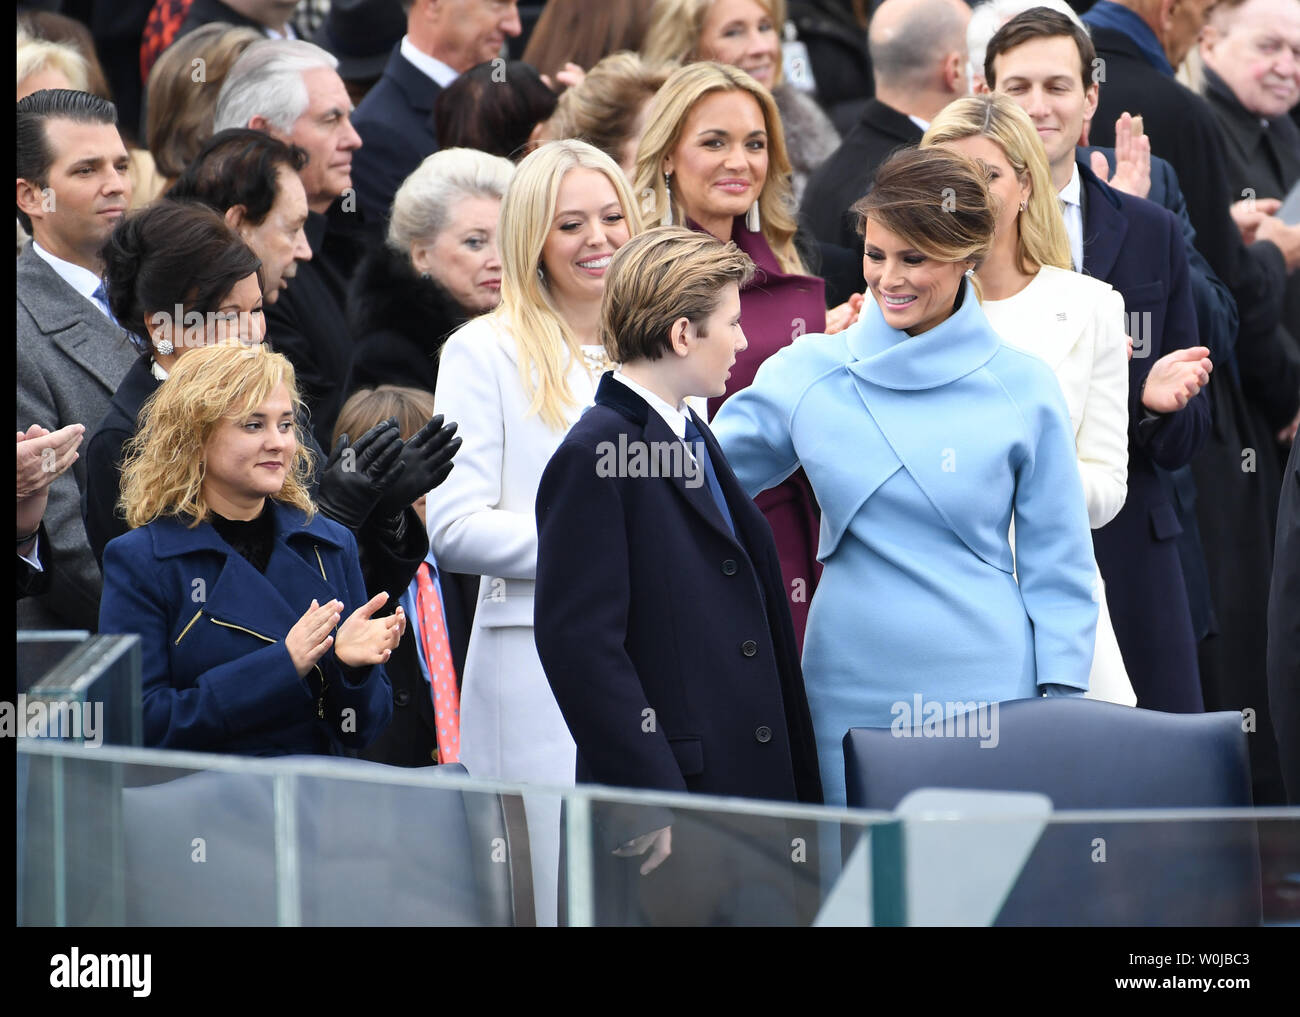 Melania Trump steht mit Trump Kinder bei der Amtseinführung von Präsident Donald Trump am 20. Januar 2017 in Washington, D.C.  Trumpf wird der 45. Präsident der Vereinigten Staaten.      Foto von Pat Benic/UPI Stockfoto